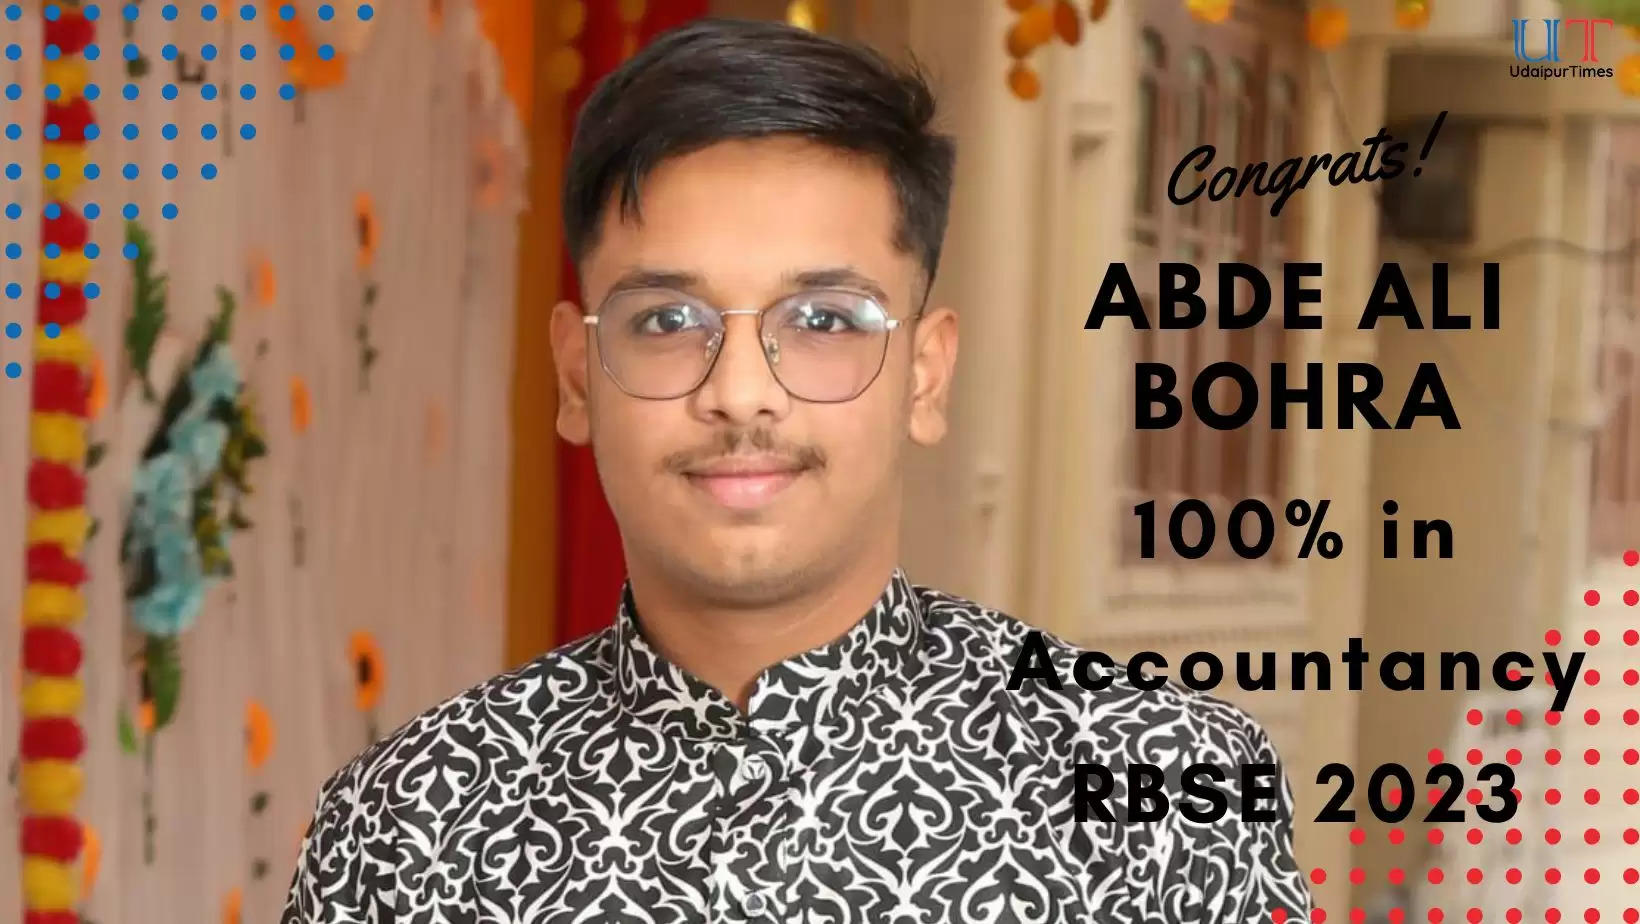 RBSE Class 12 Results 2023 Abde Ali Bohra 100 in Accounts